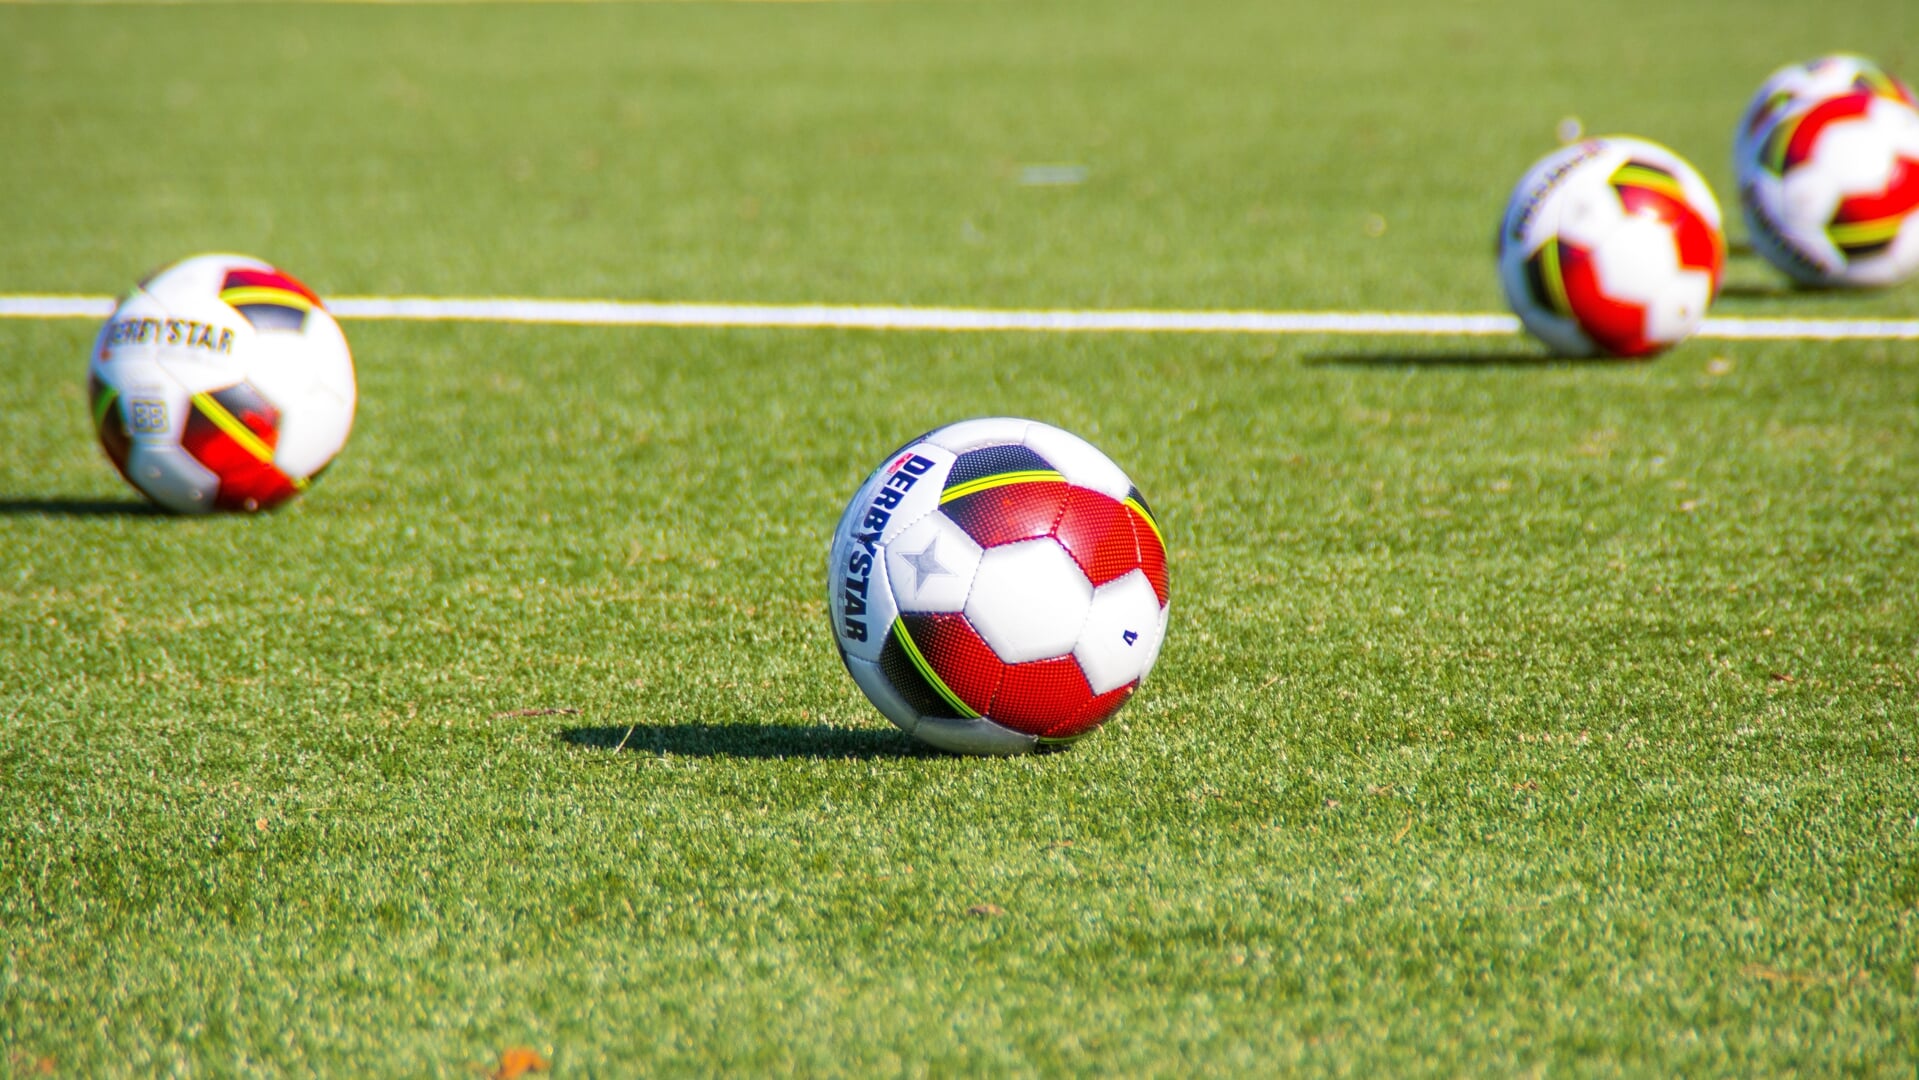 In onze regio wordt al vanaf eind 19e eeuw voetbal gespeeld.